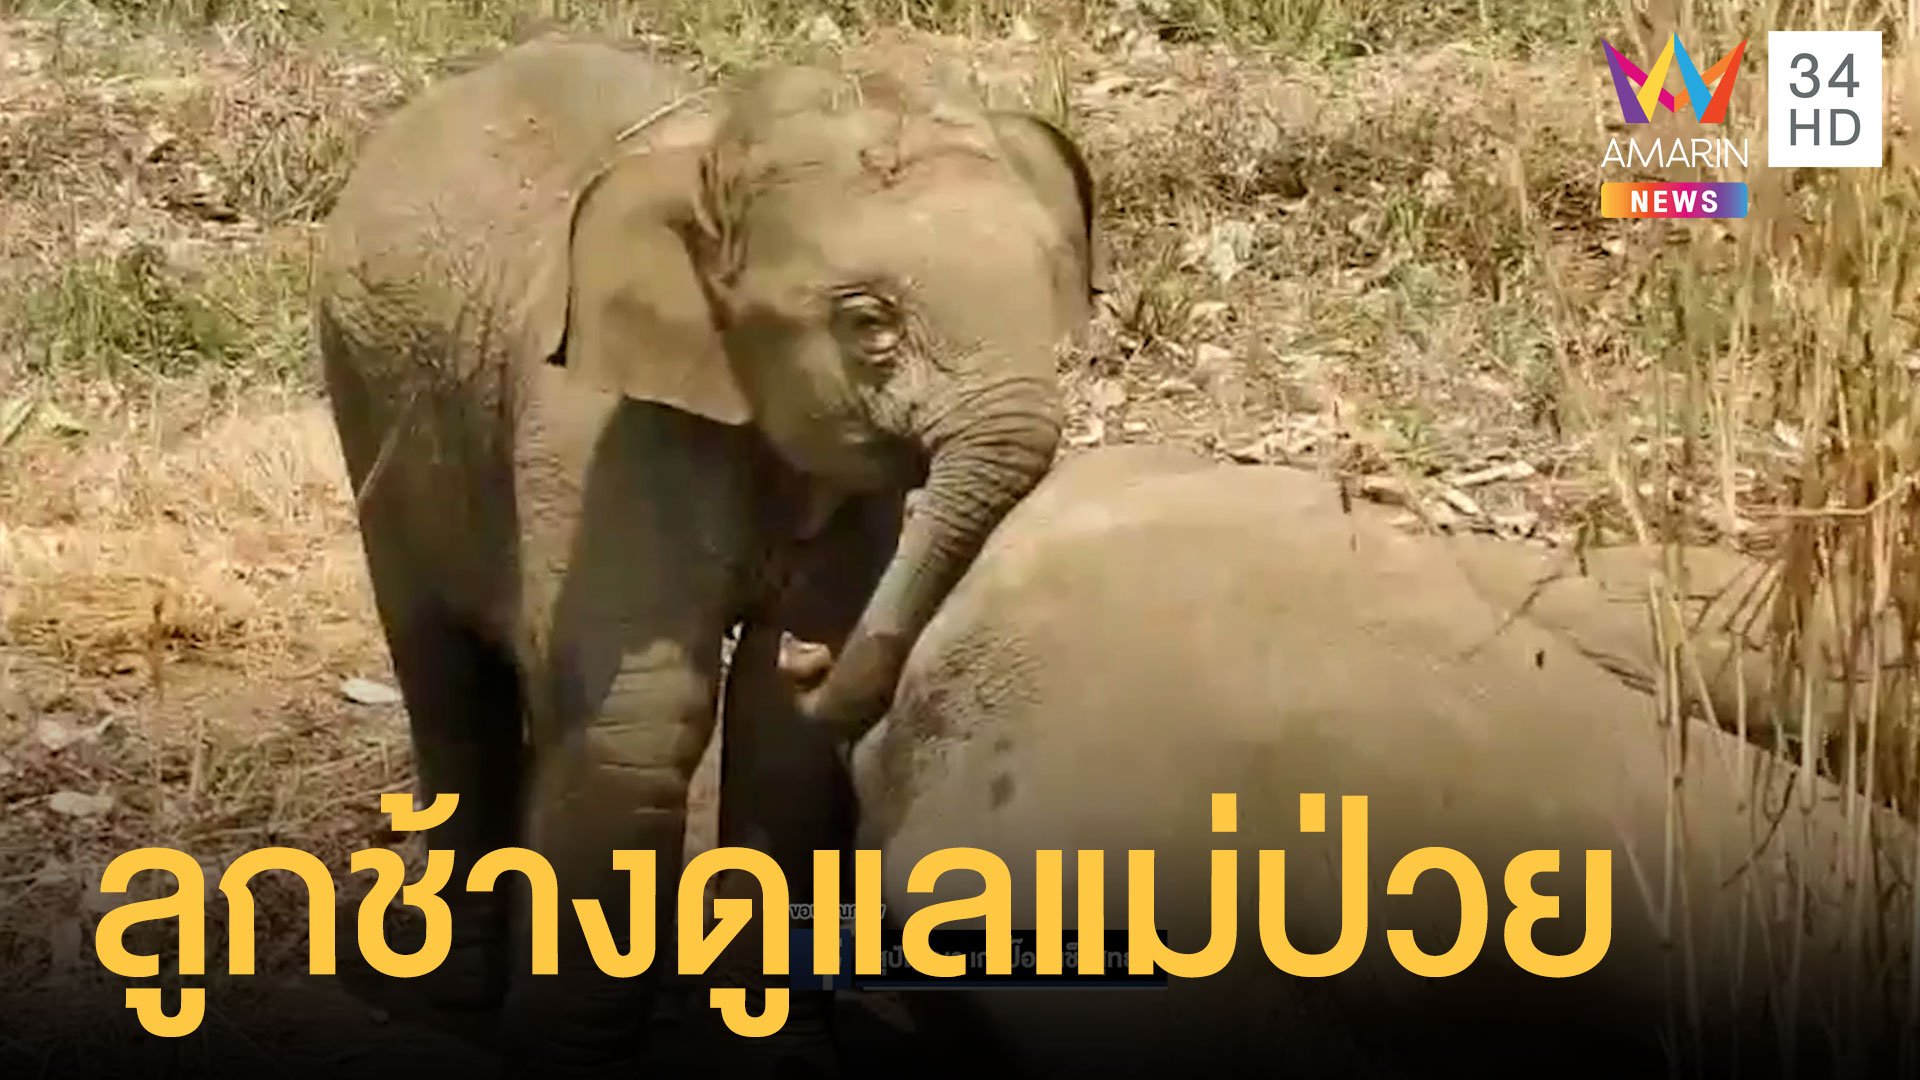 แม่ช้างป่วยลูกช้างกลัวคนทำร้ายแม่ วิ่งไล่ต้อนคนให้ถอยไป | ข่าวอรุณอมรินทร์ | 1 มี.ค. 64 | AMARIN TVHD34